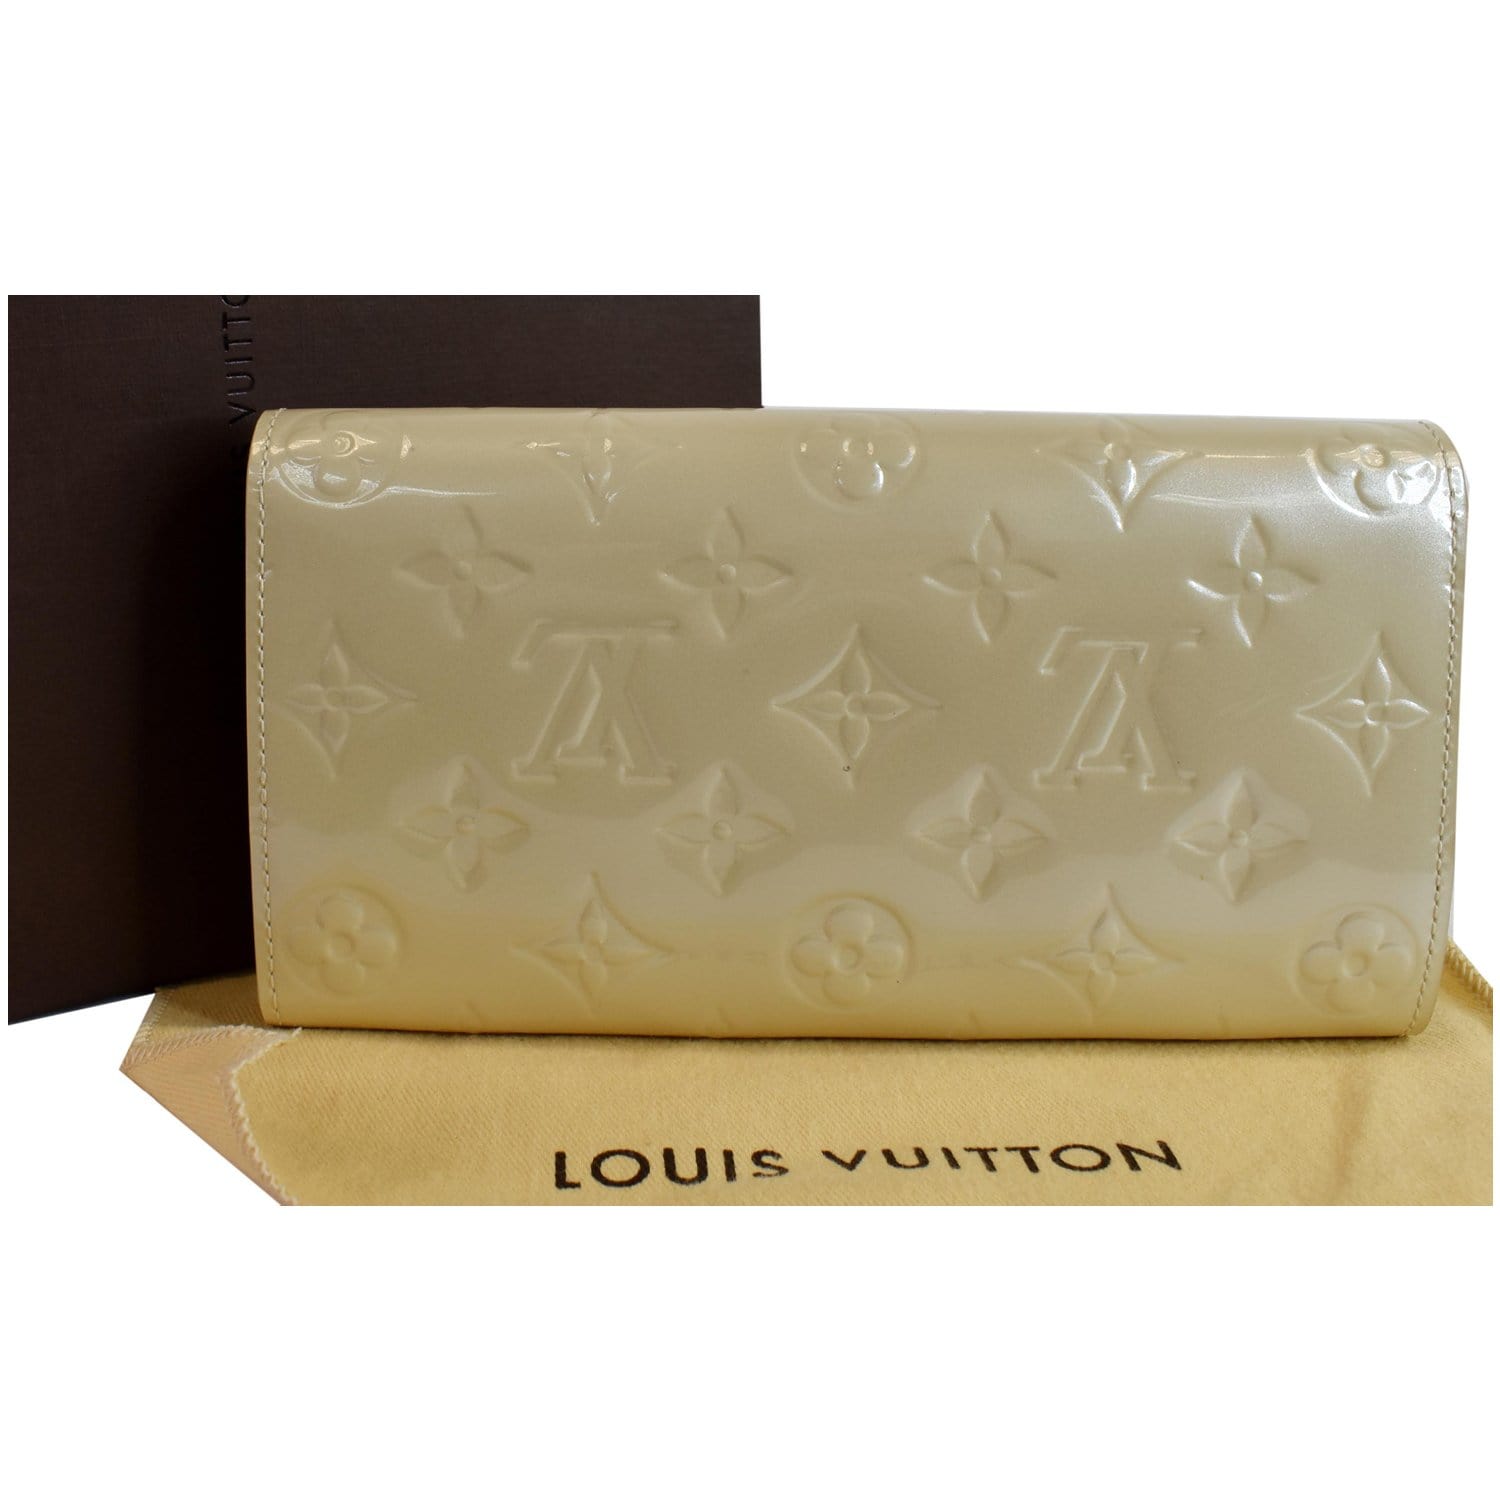 Louis Vuitton Monogram Vernis Sarah Wallet Louis Vuitton | The Luxury Closet